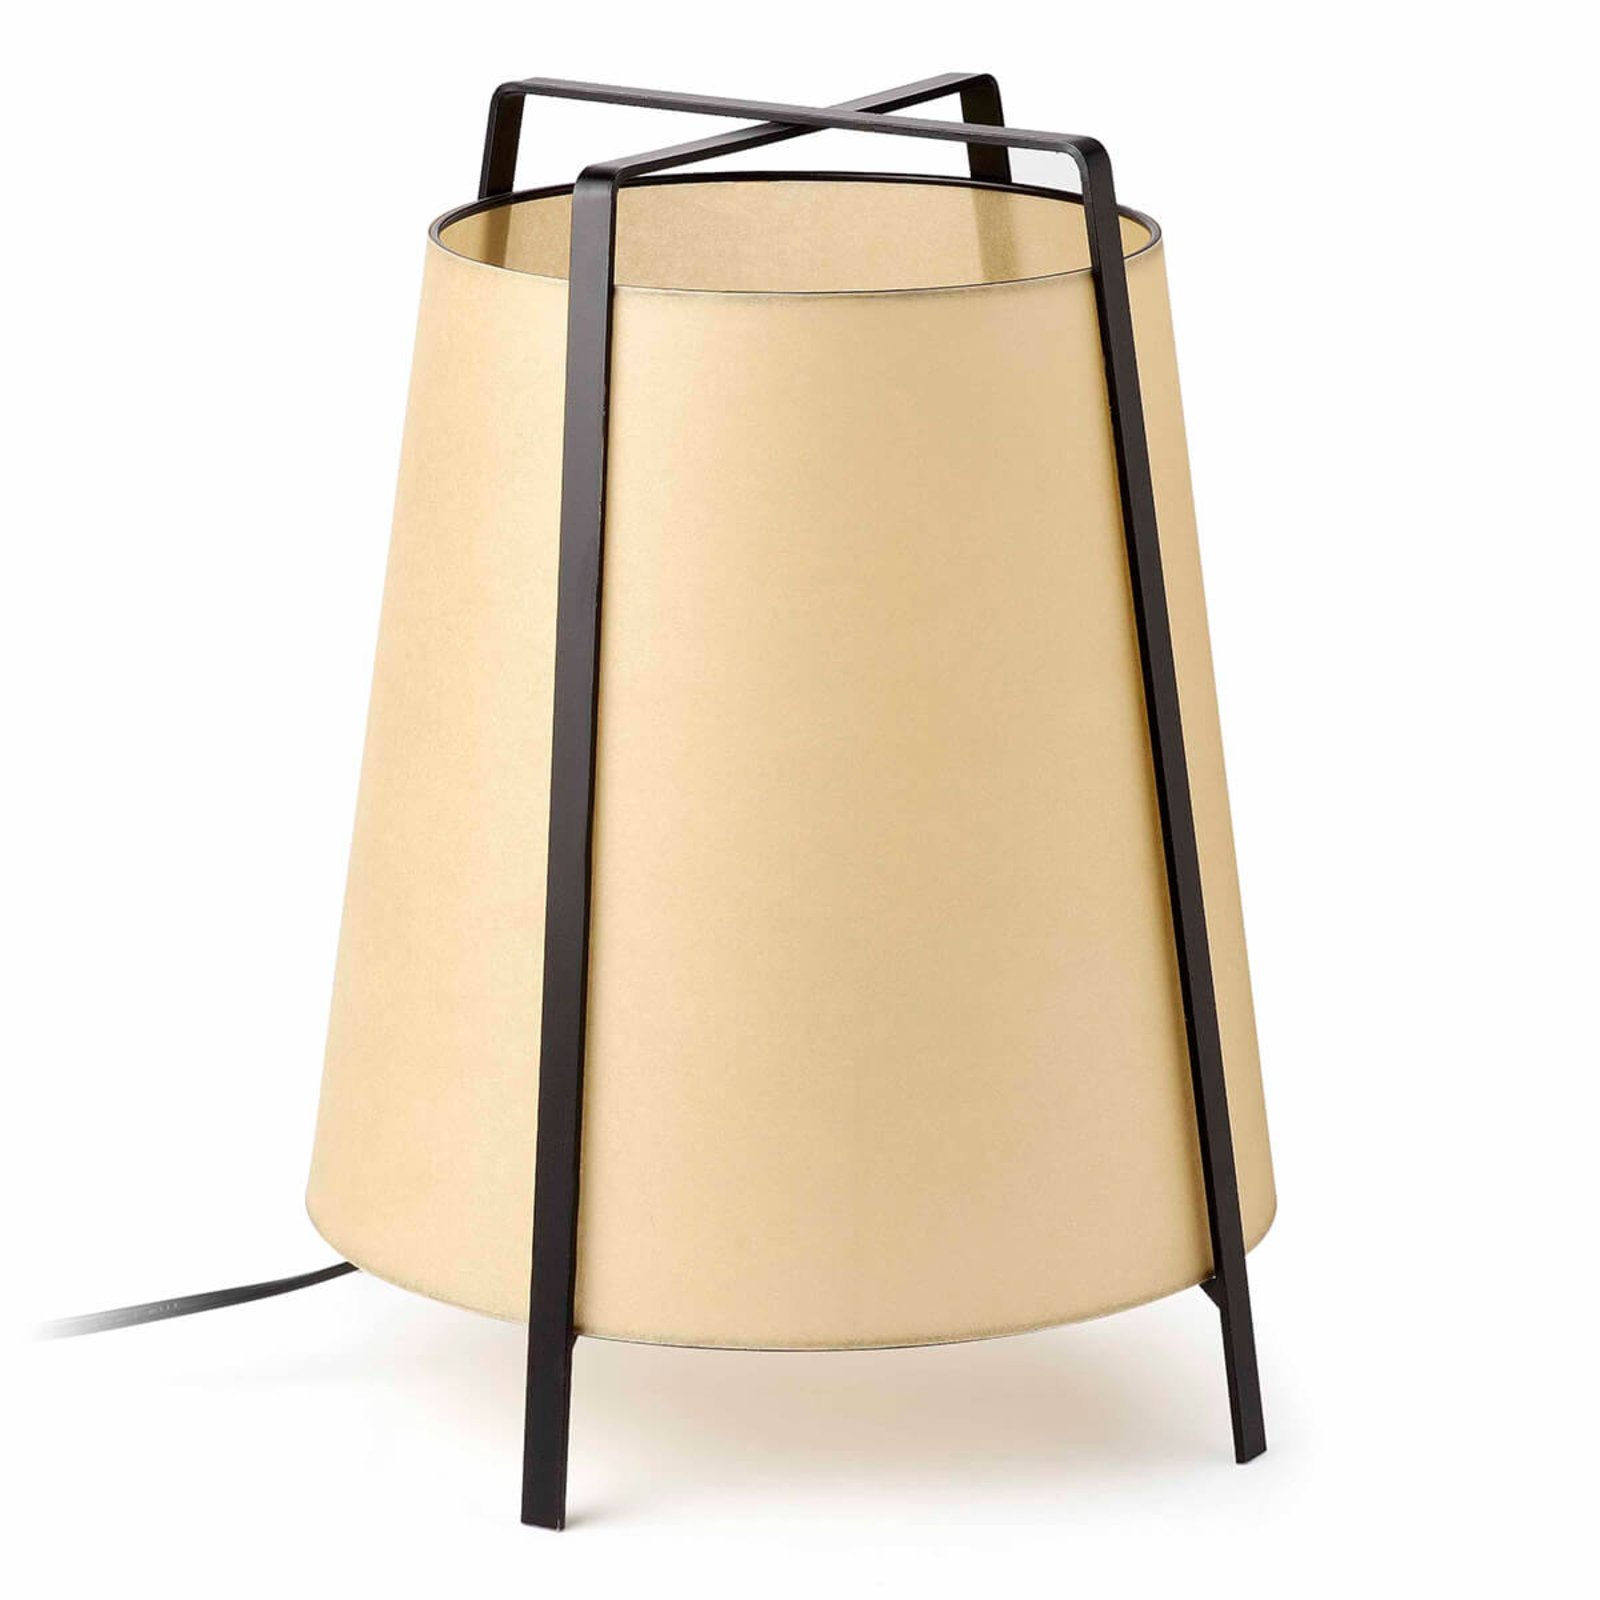 V Španělsku vyrobená stolní lampa Akane